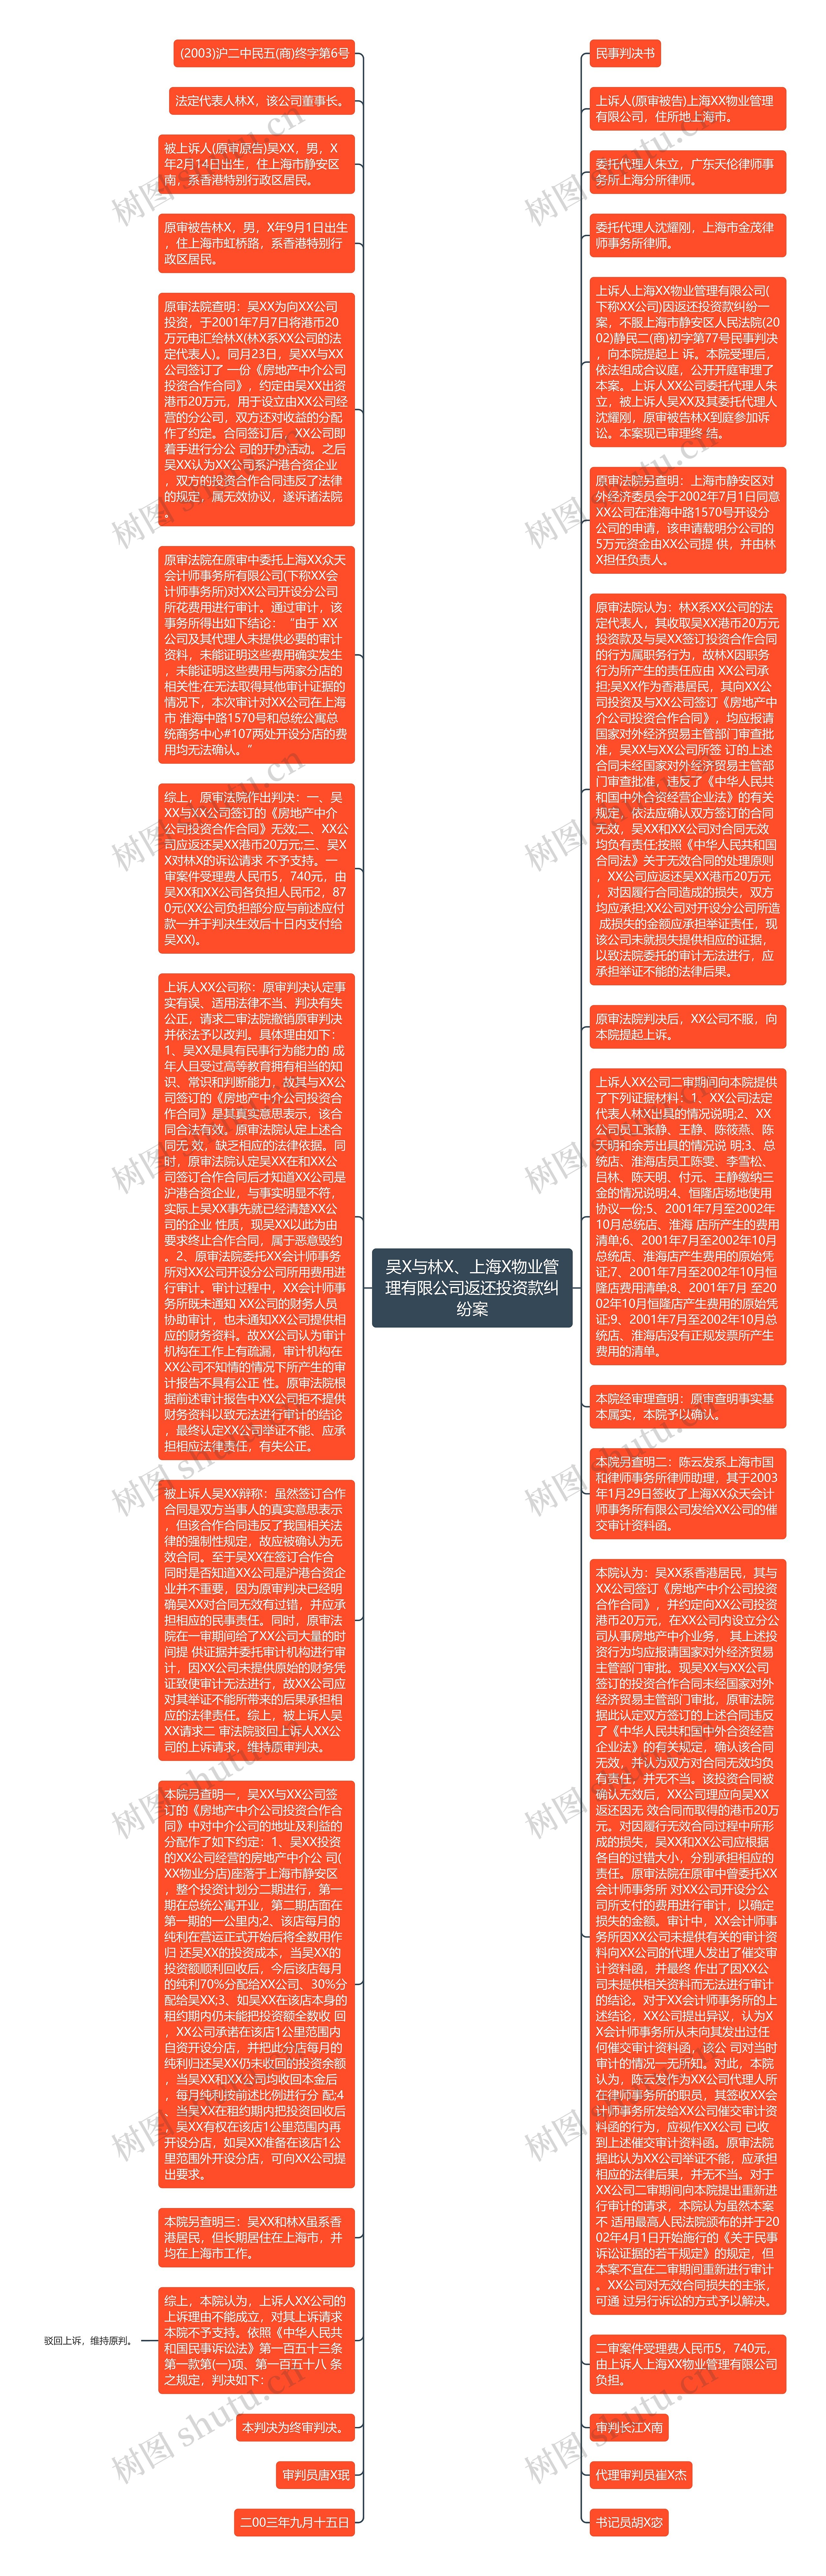 吴X与林X、上海X物业管理有限公司返还投资款纠纷案